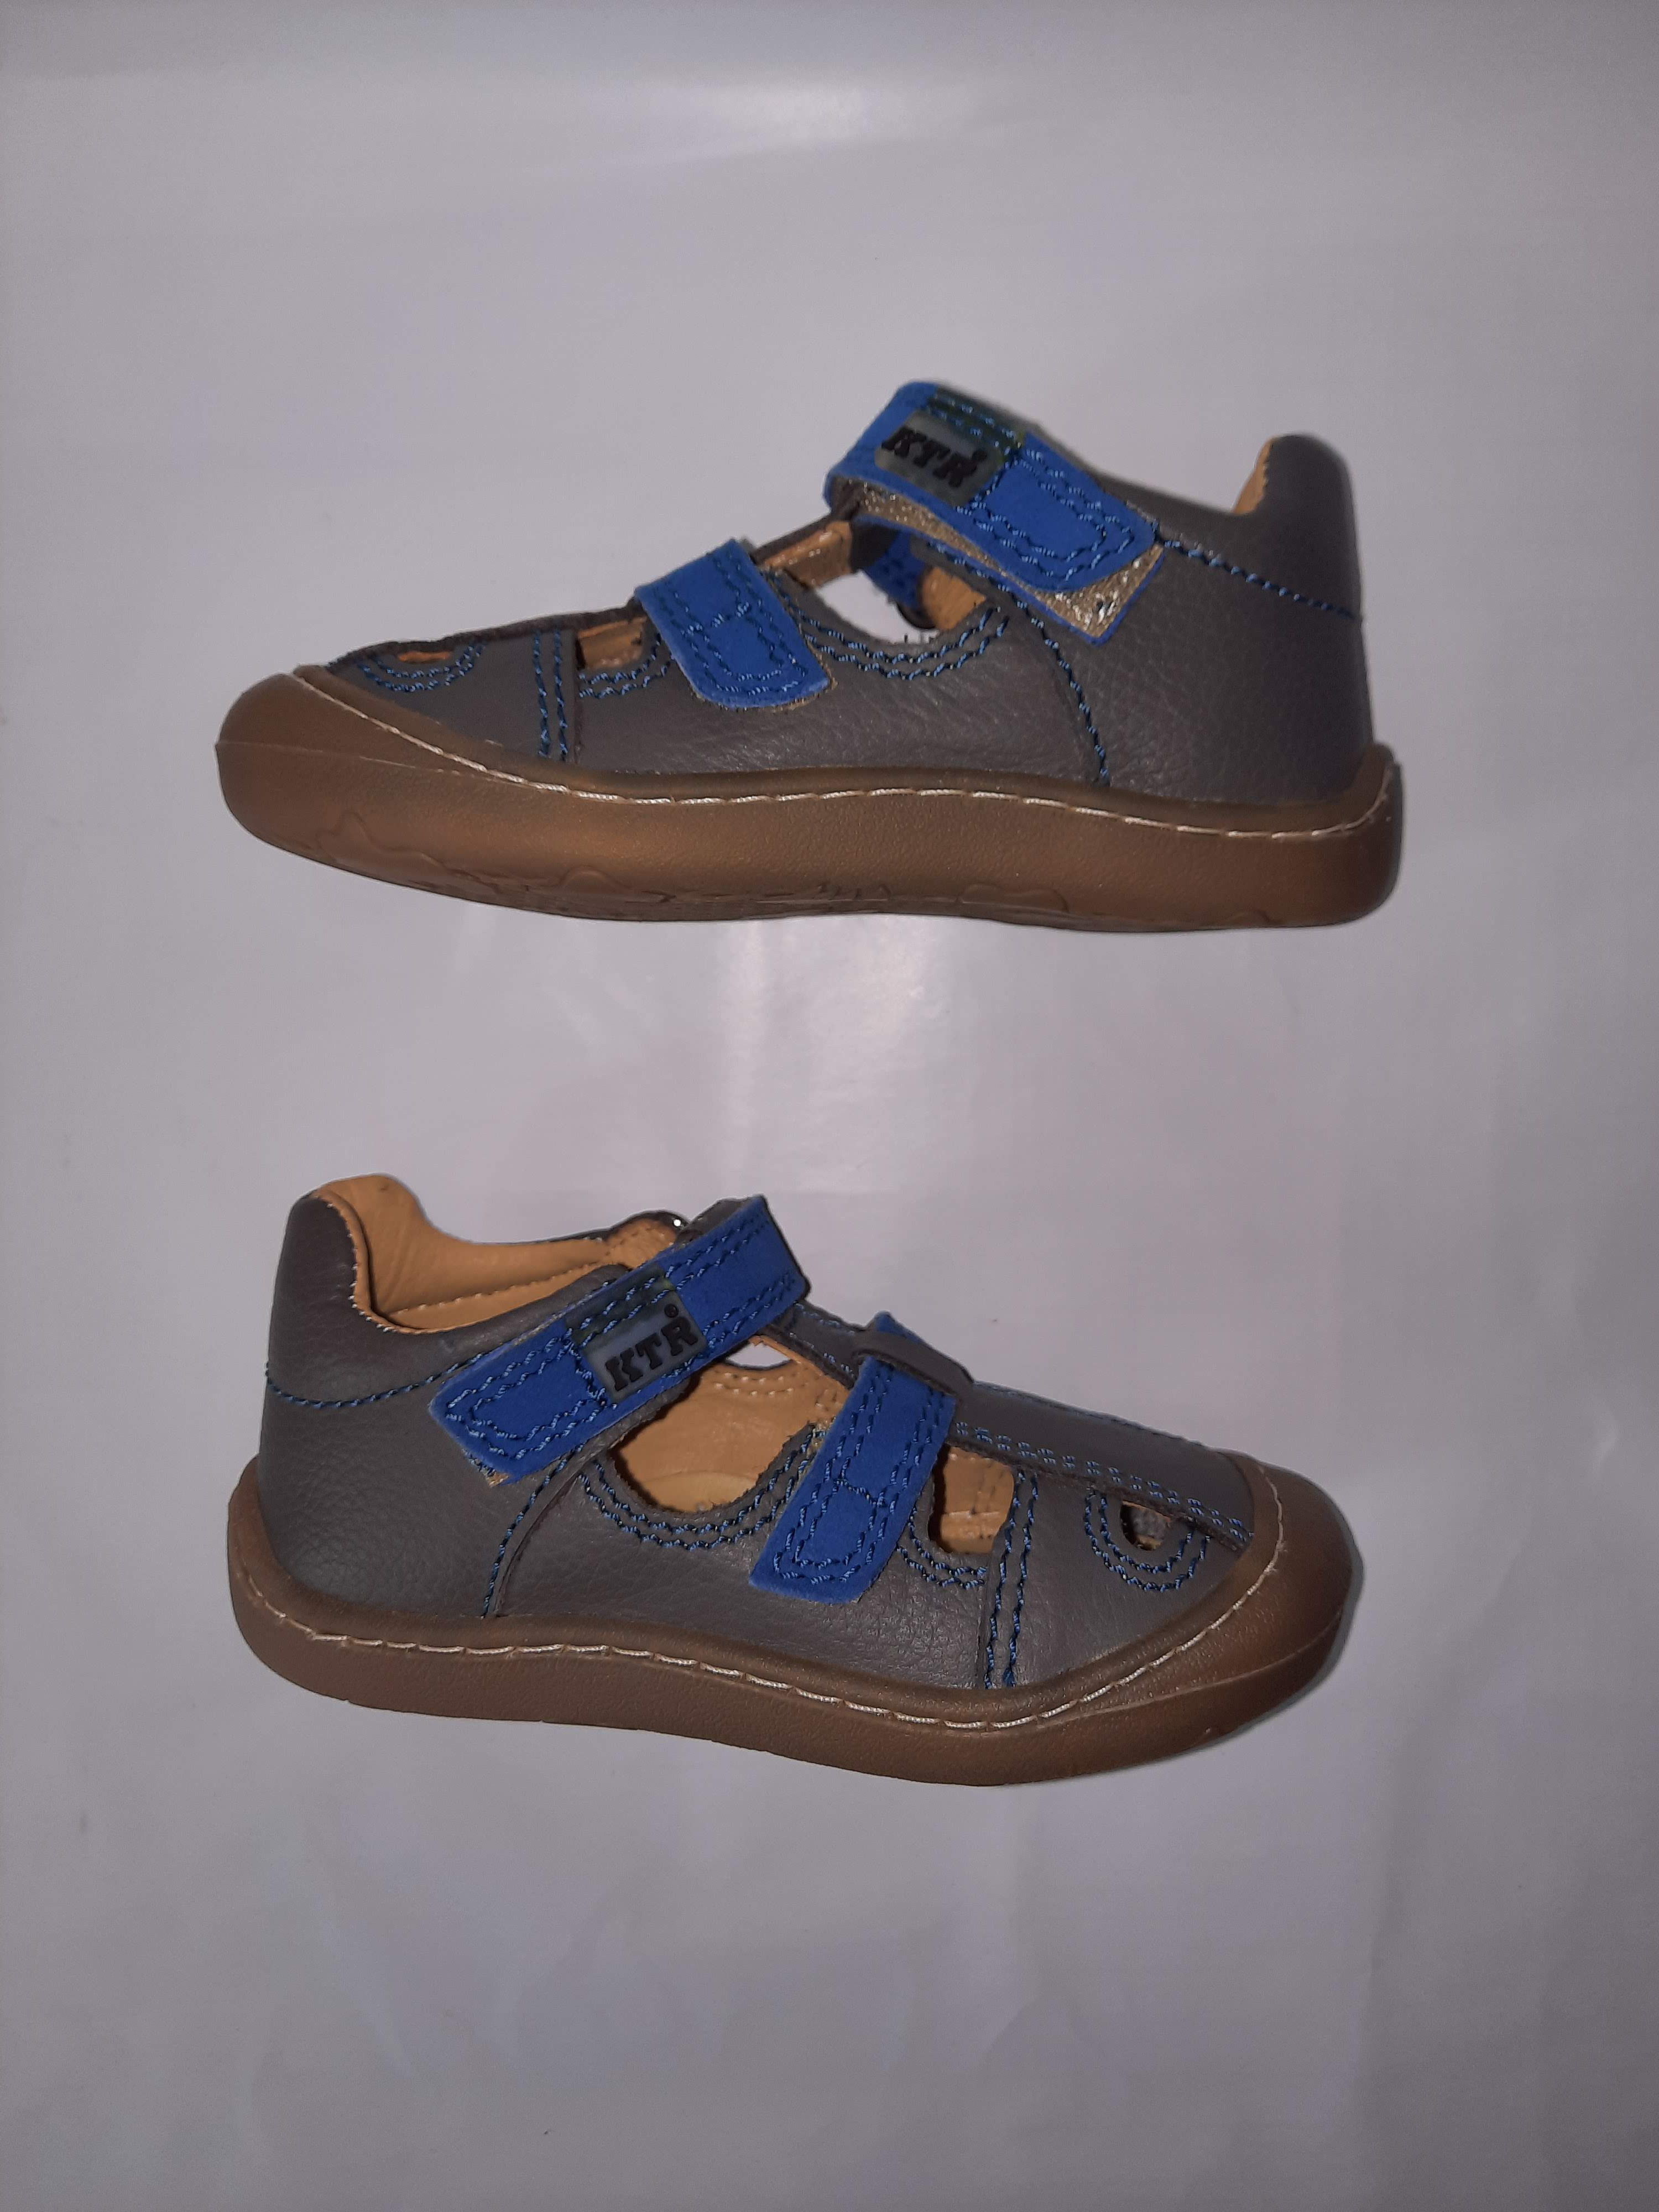 KTR® barefoot letní sandálky KENY šedá/modrá Velikost: 20